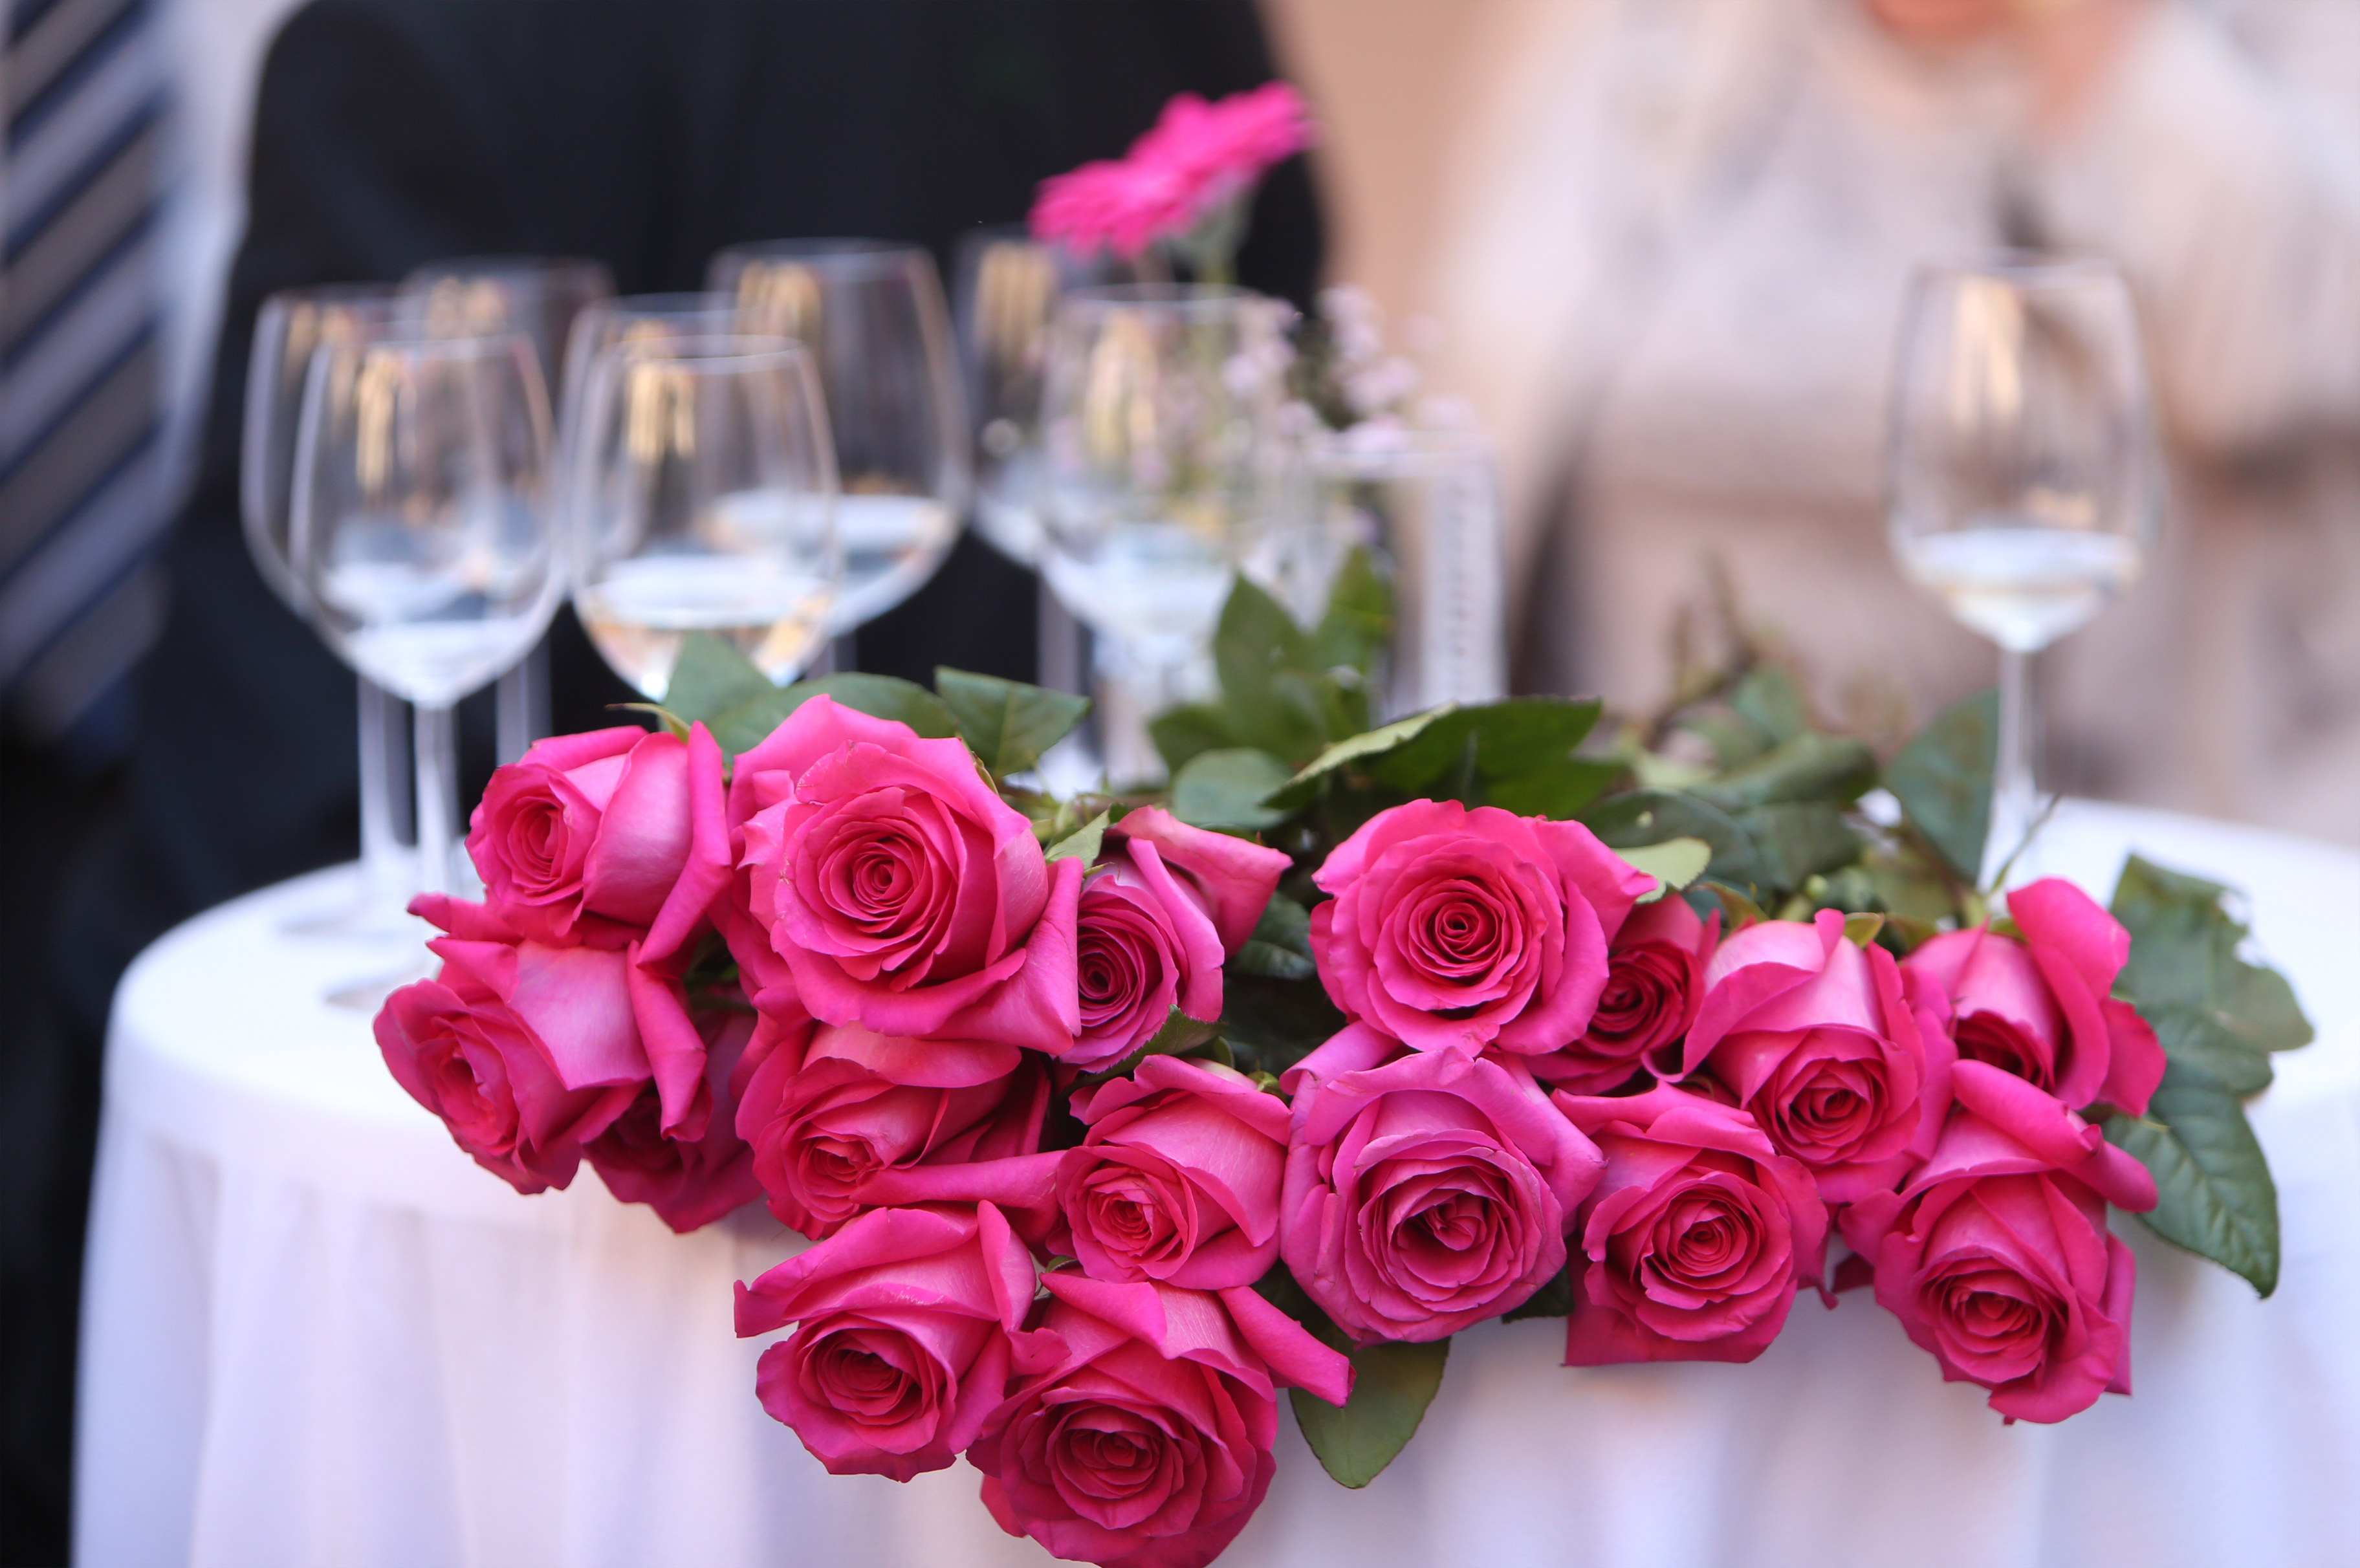 Много цветов на столе. Цветы на праздничном столе. Букет цветов на столе. Букеты цветов шикарные на столе. Букет роз на столе.